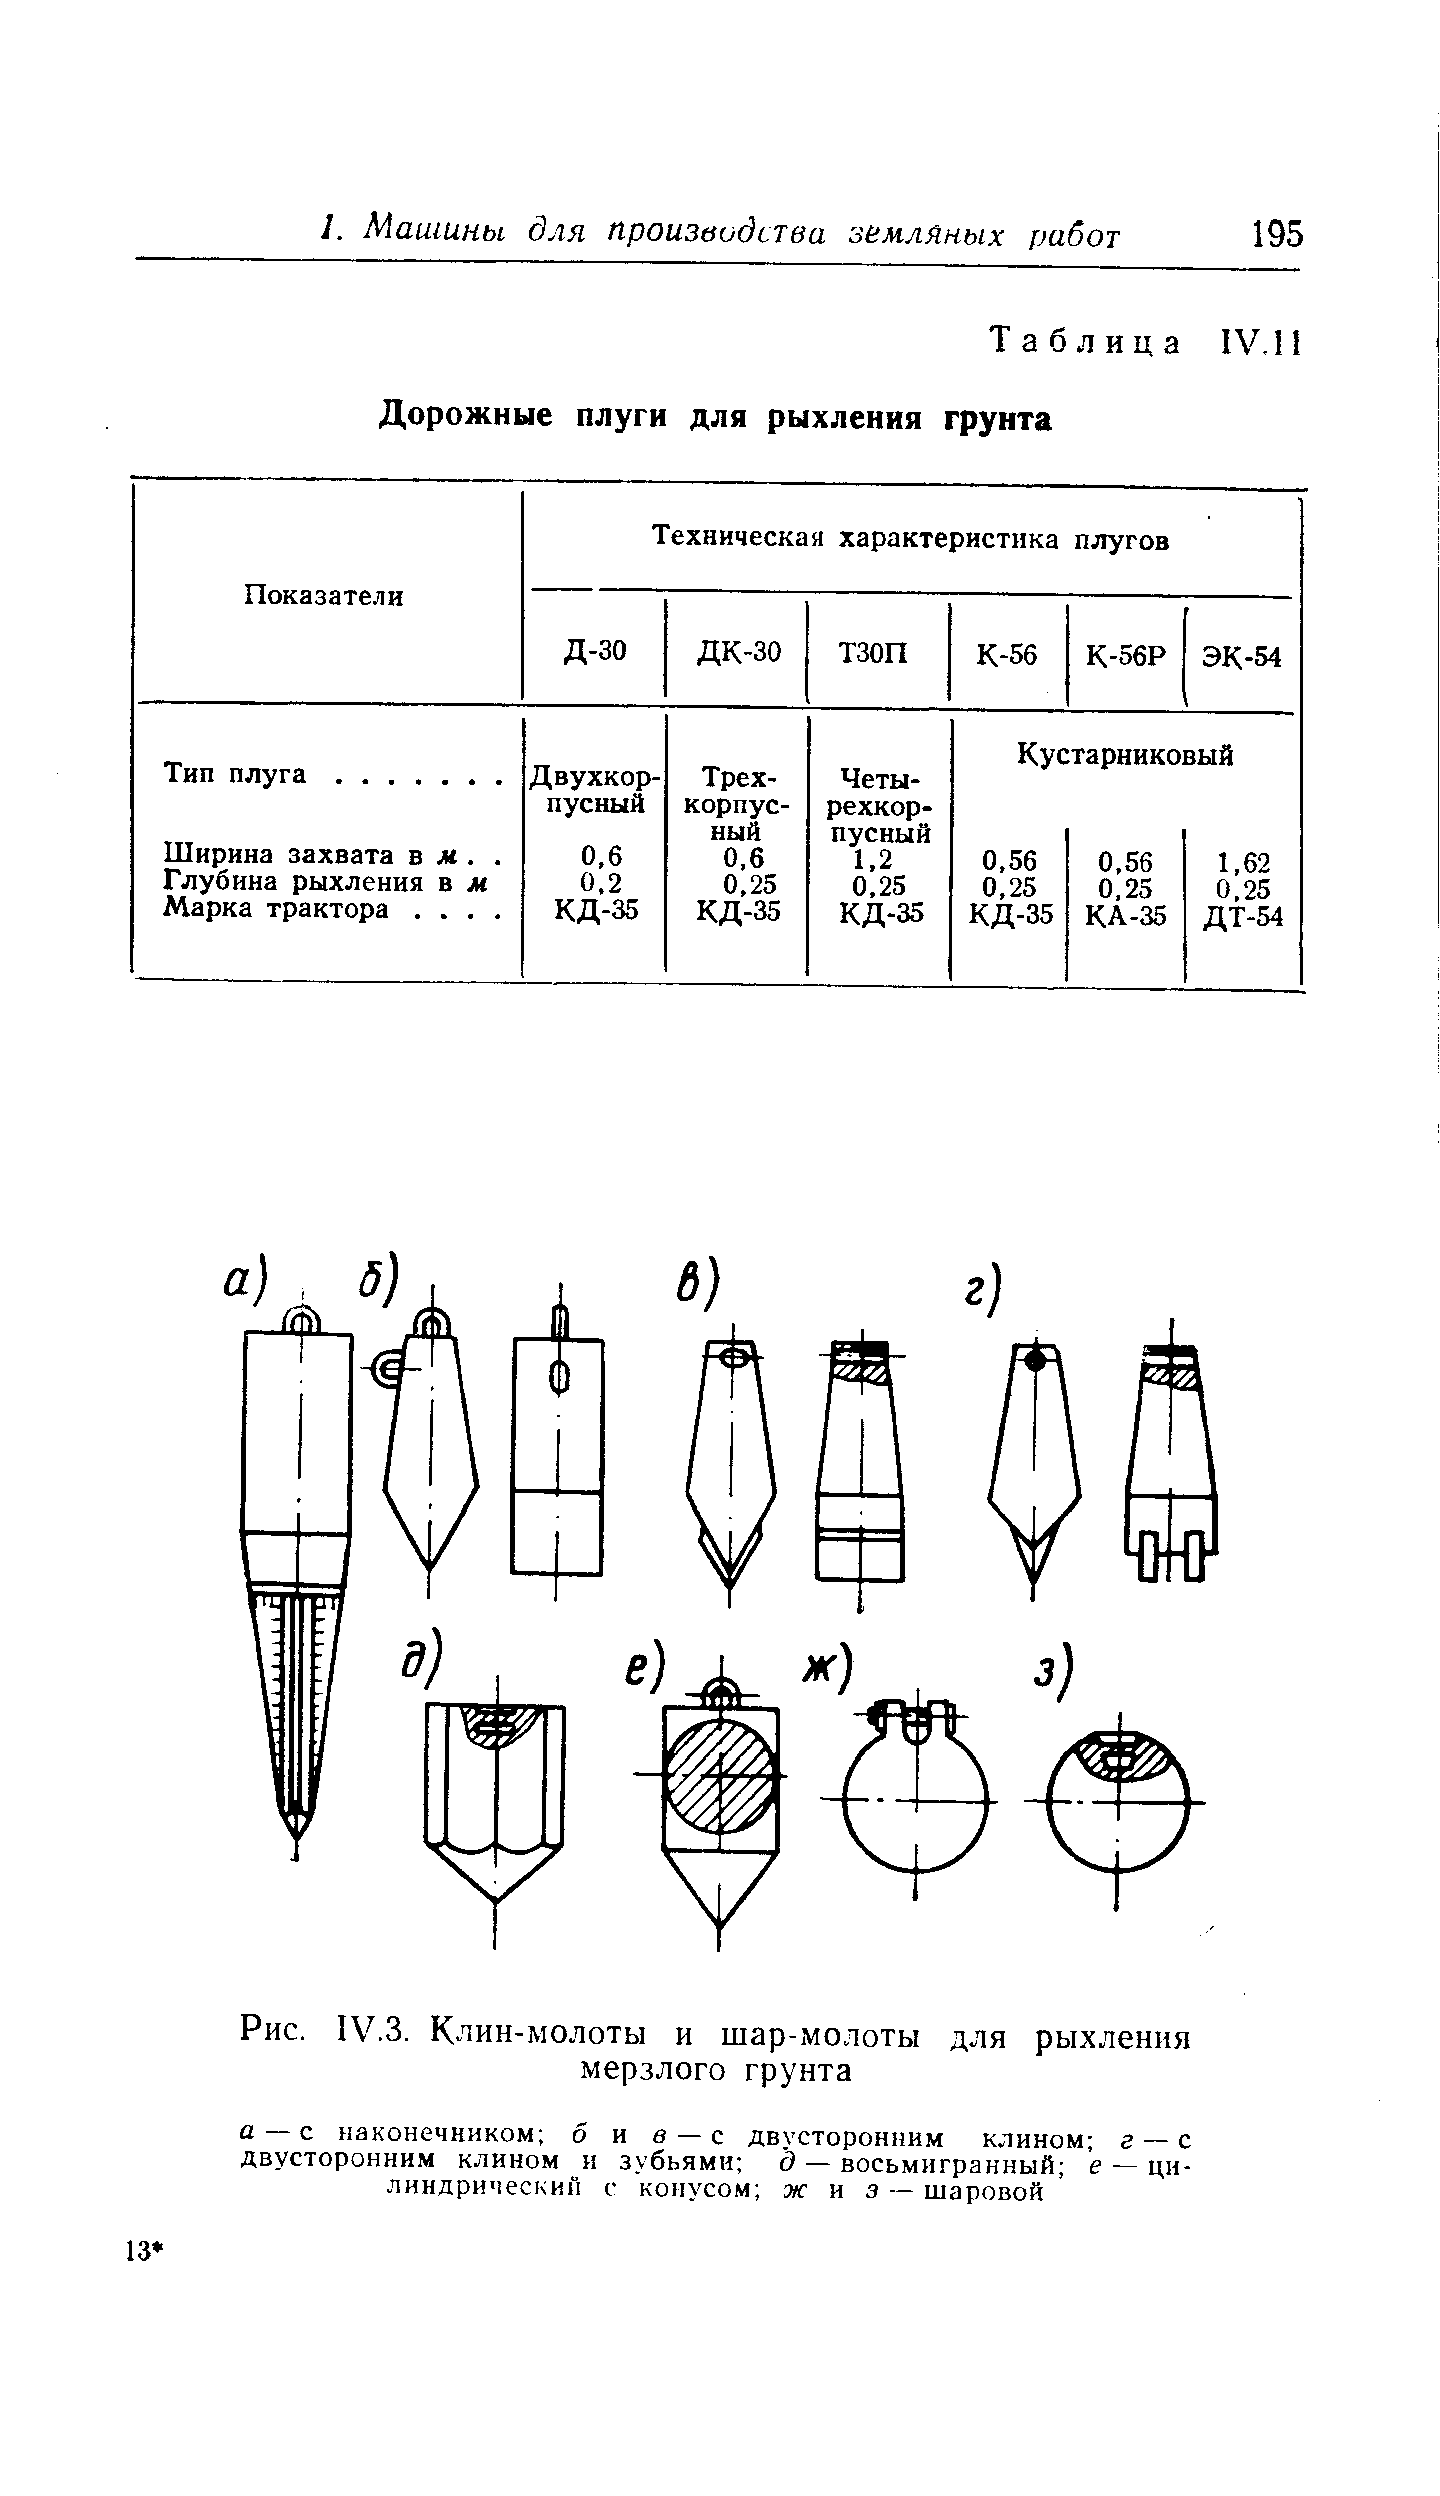 Таблица IV. 1 Дорожные плуги для рыхления грунта
